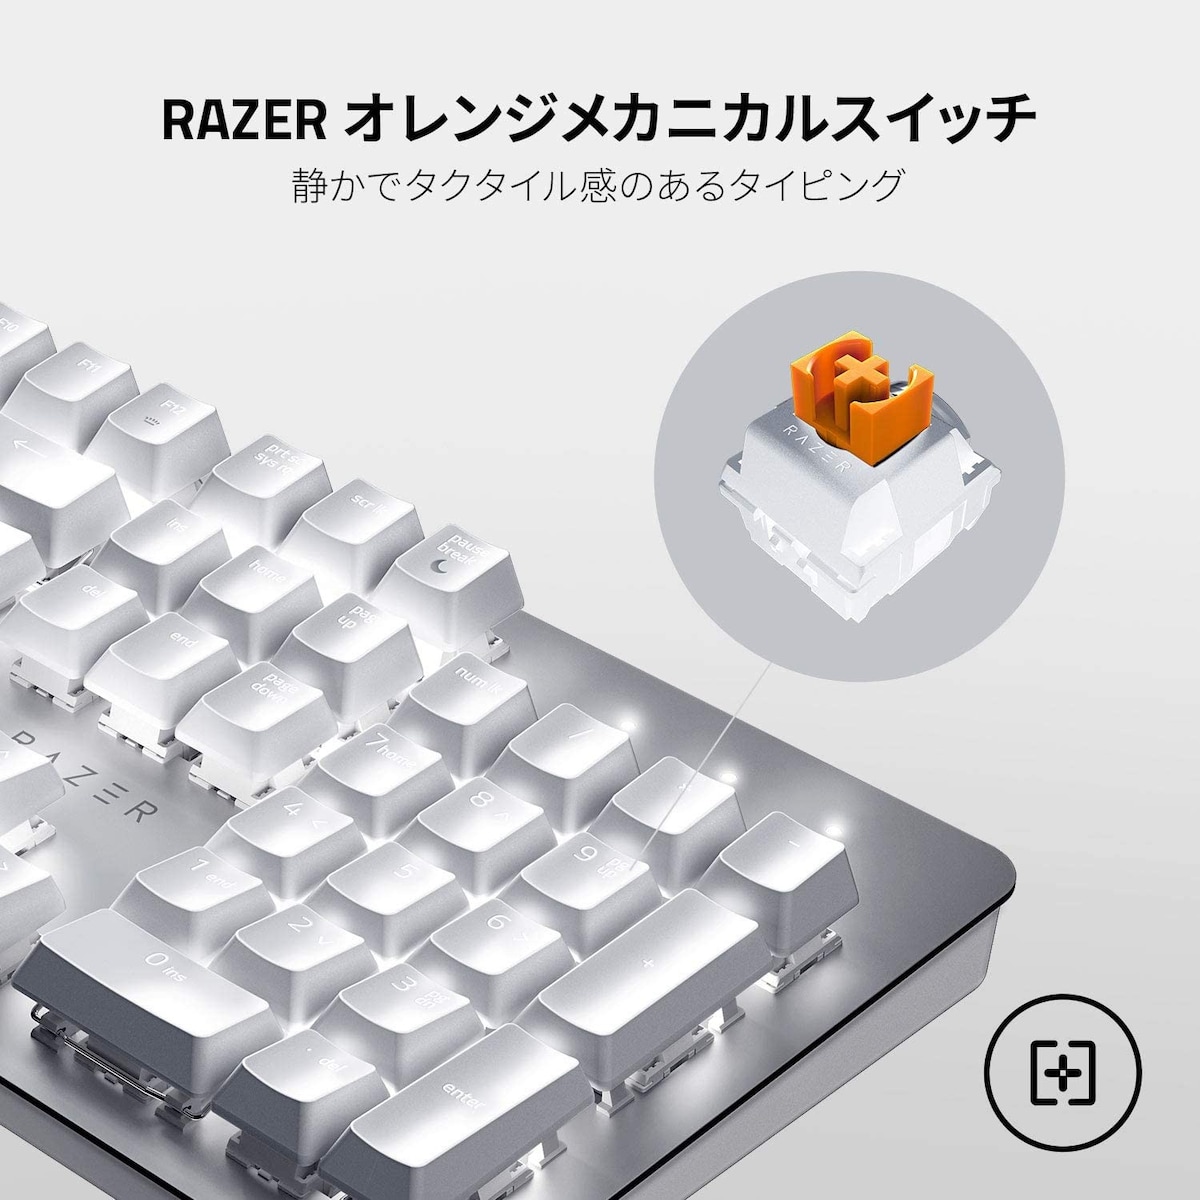  Razer Pro Type画像2 